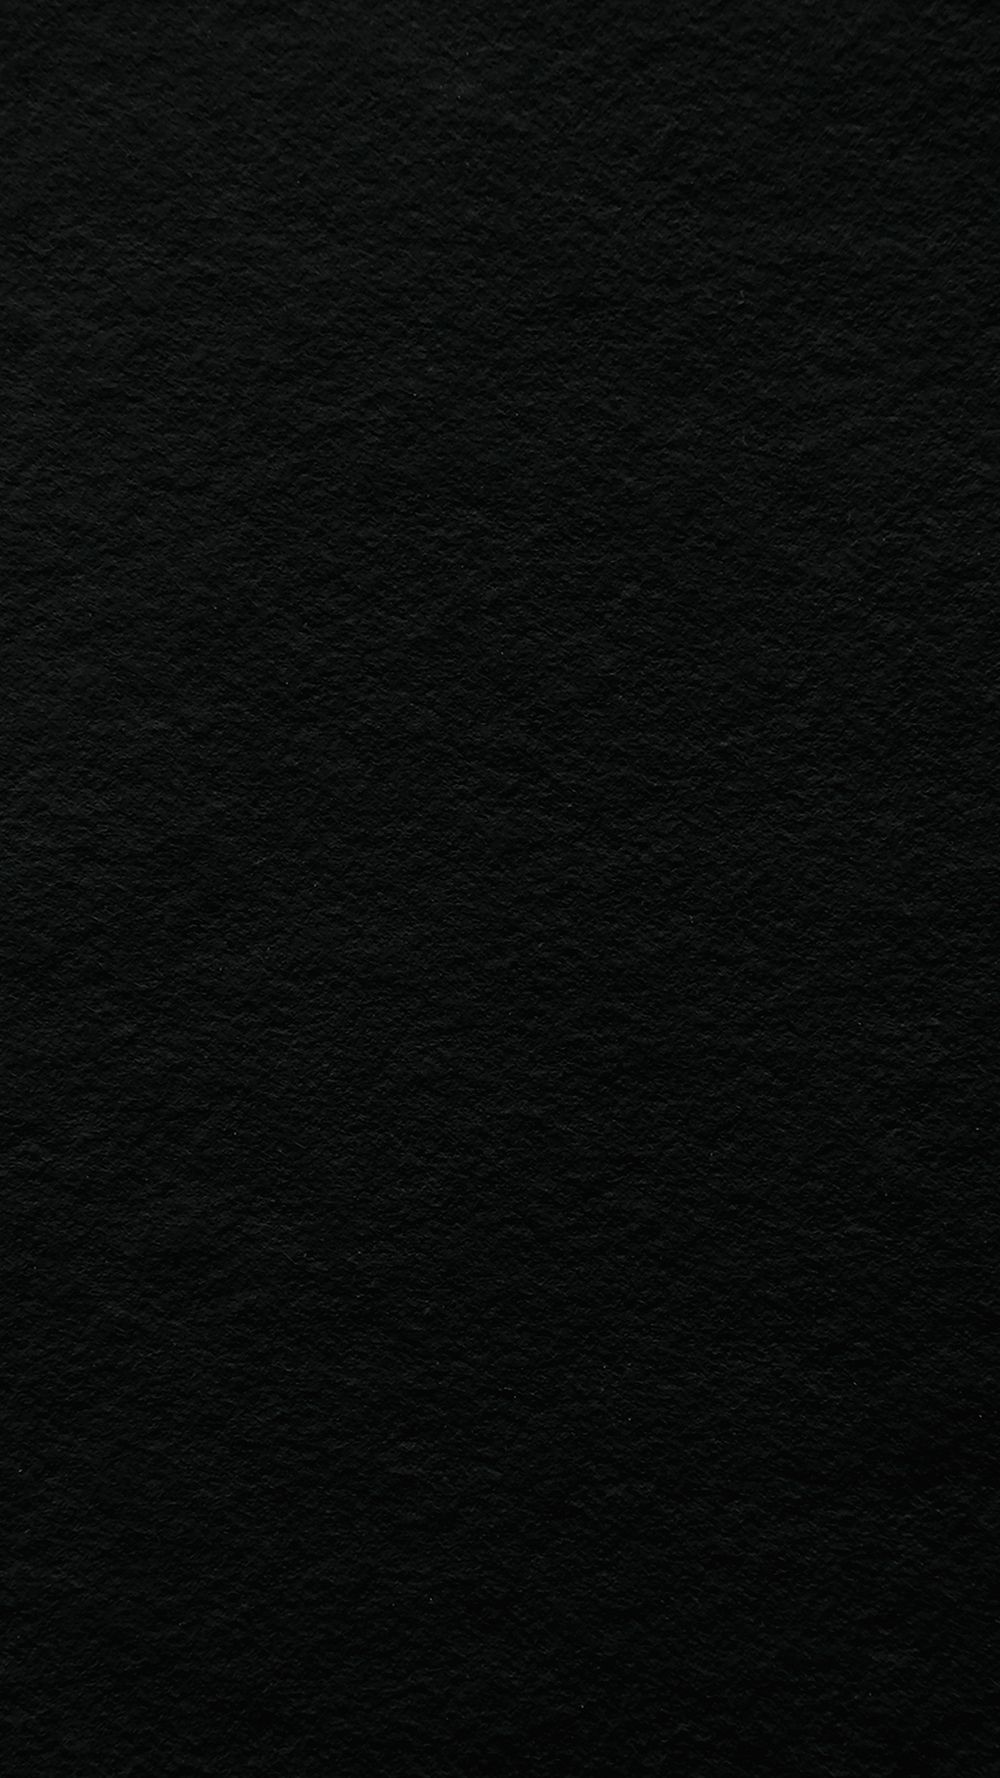 Plain black phone wallpaper, dark | Premium Photo - rawpixel